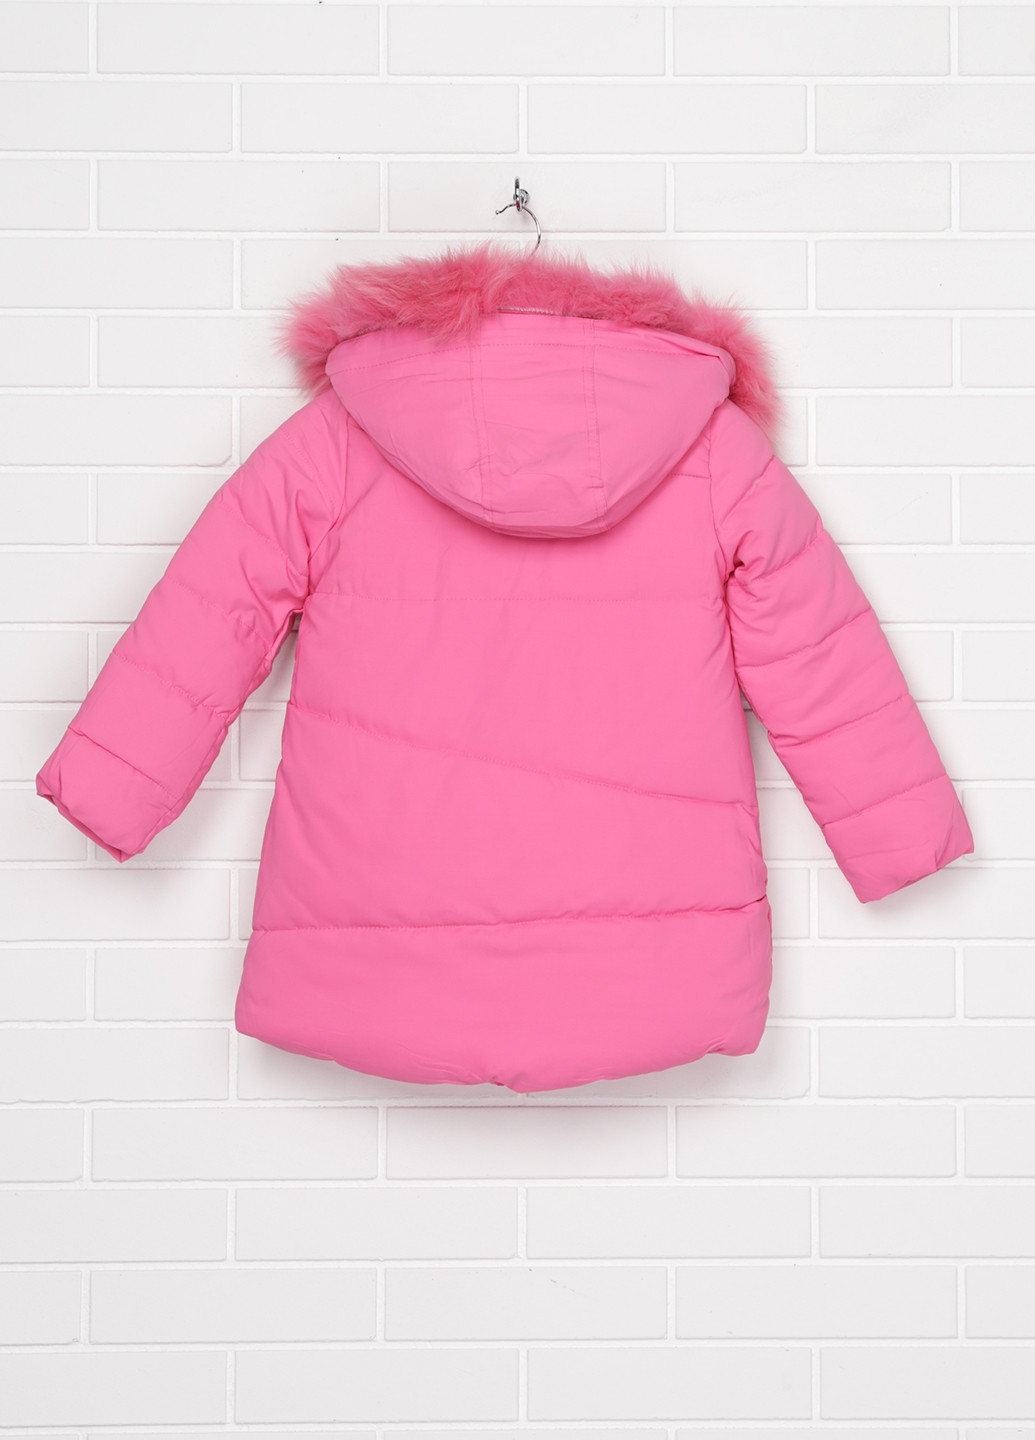 Розовая зимняя куртка XRTR